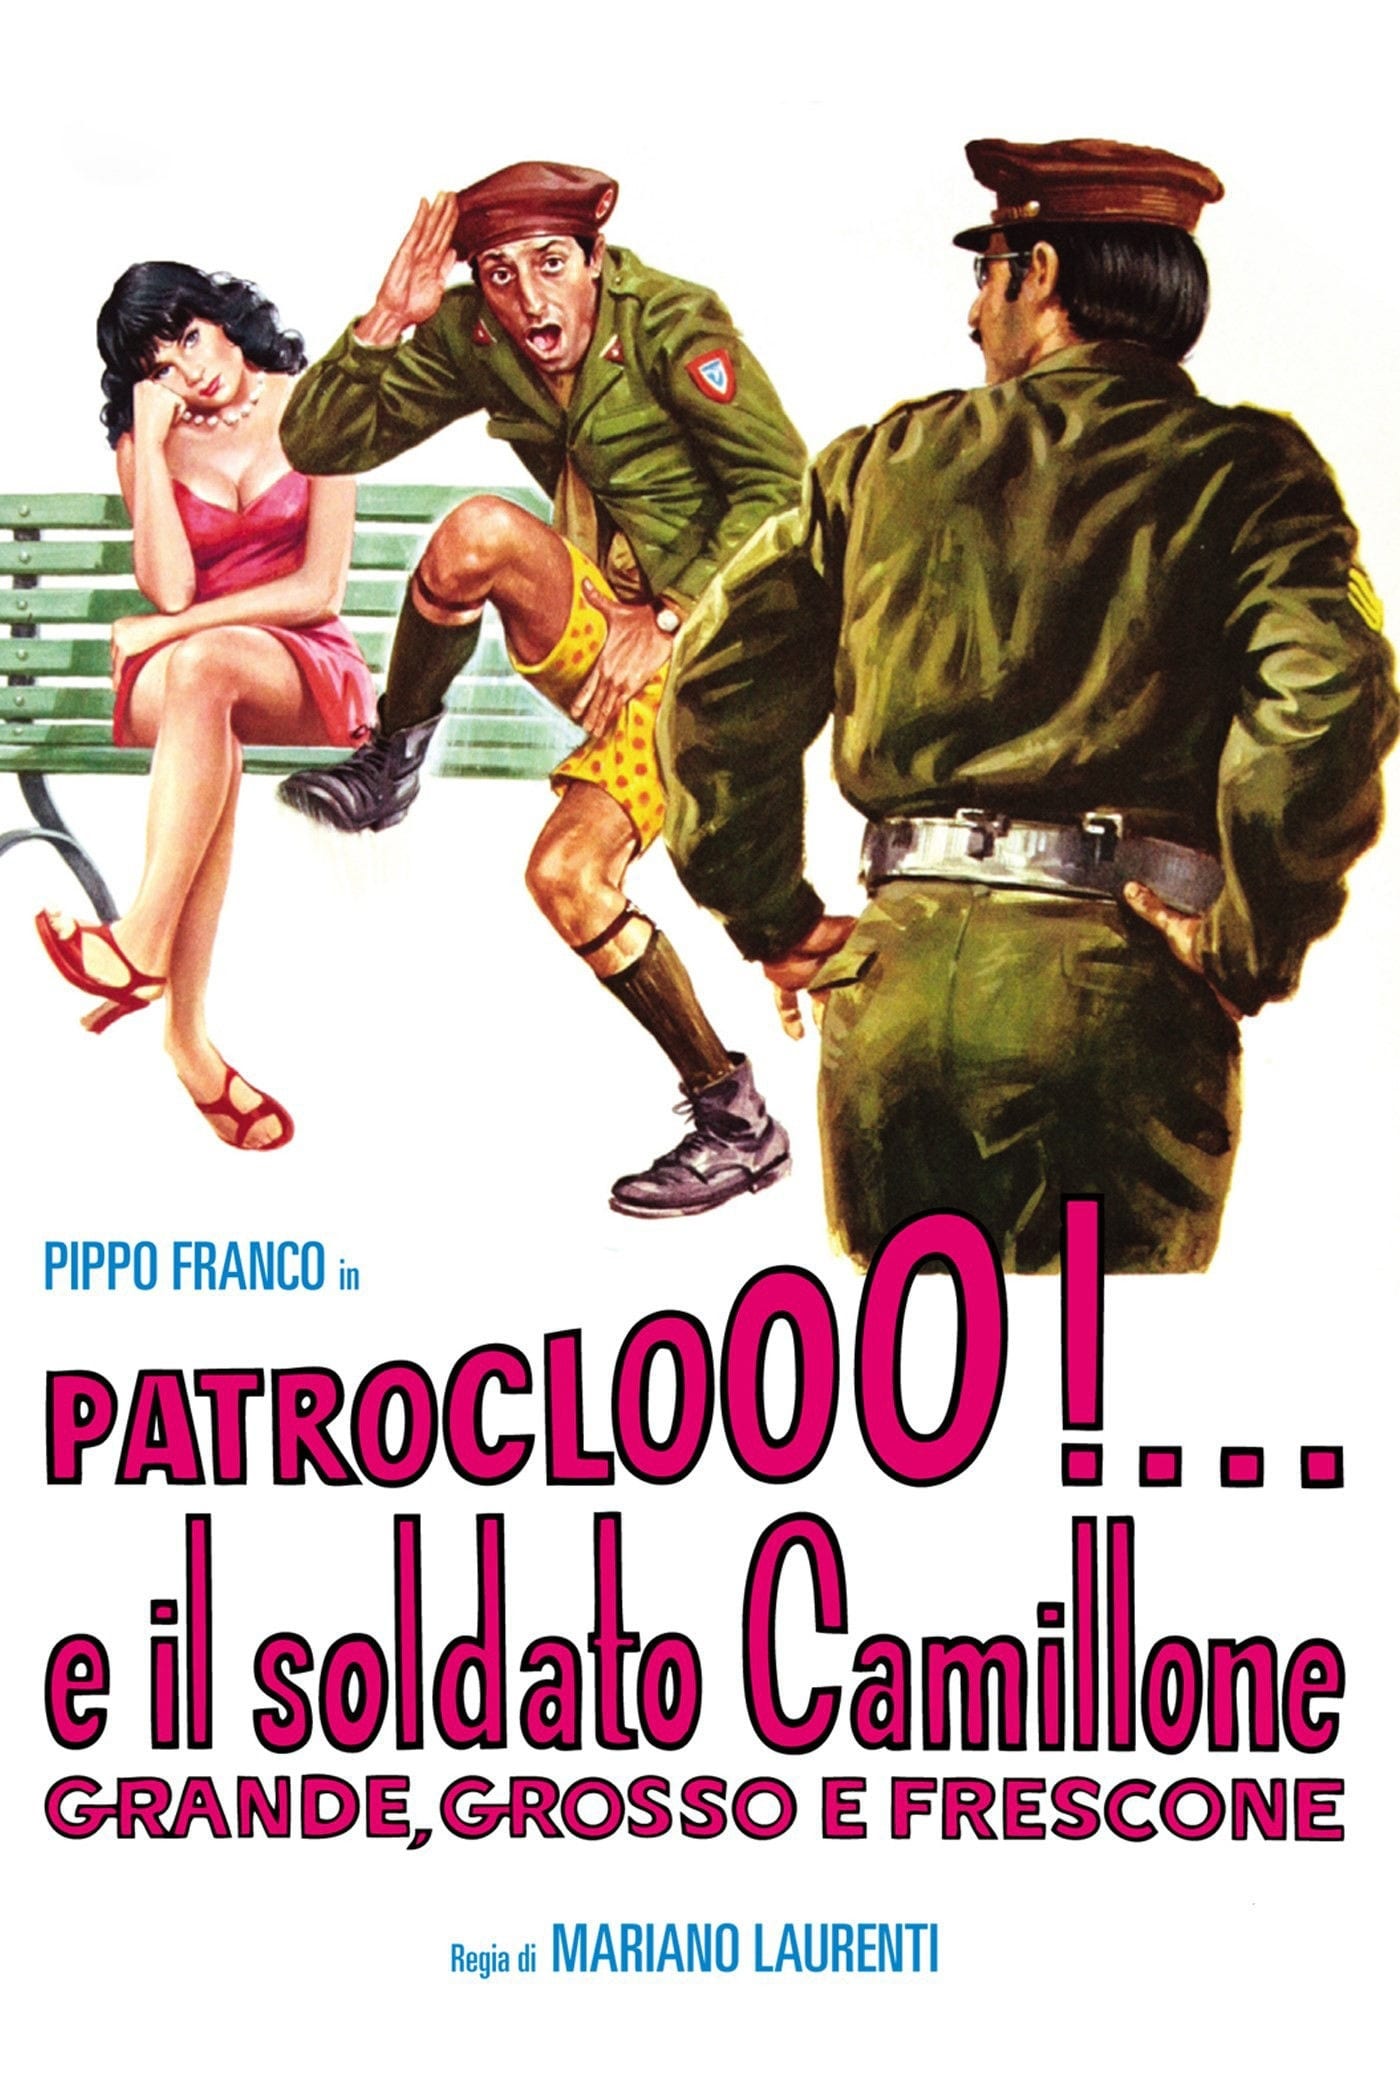 Patroclooo!... e il soldato Camillone, grande grosso e frescone streaming